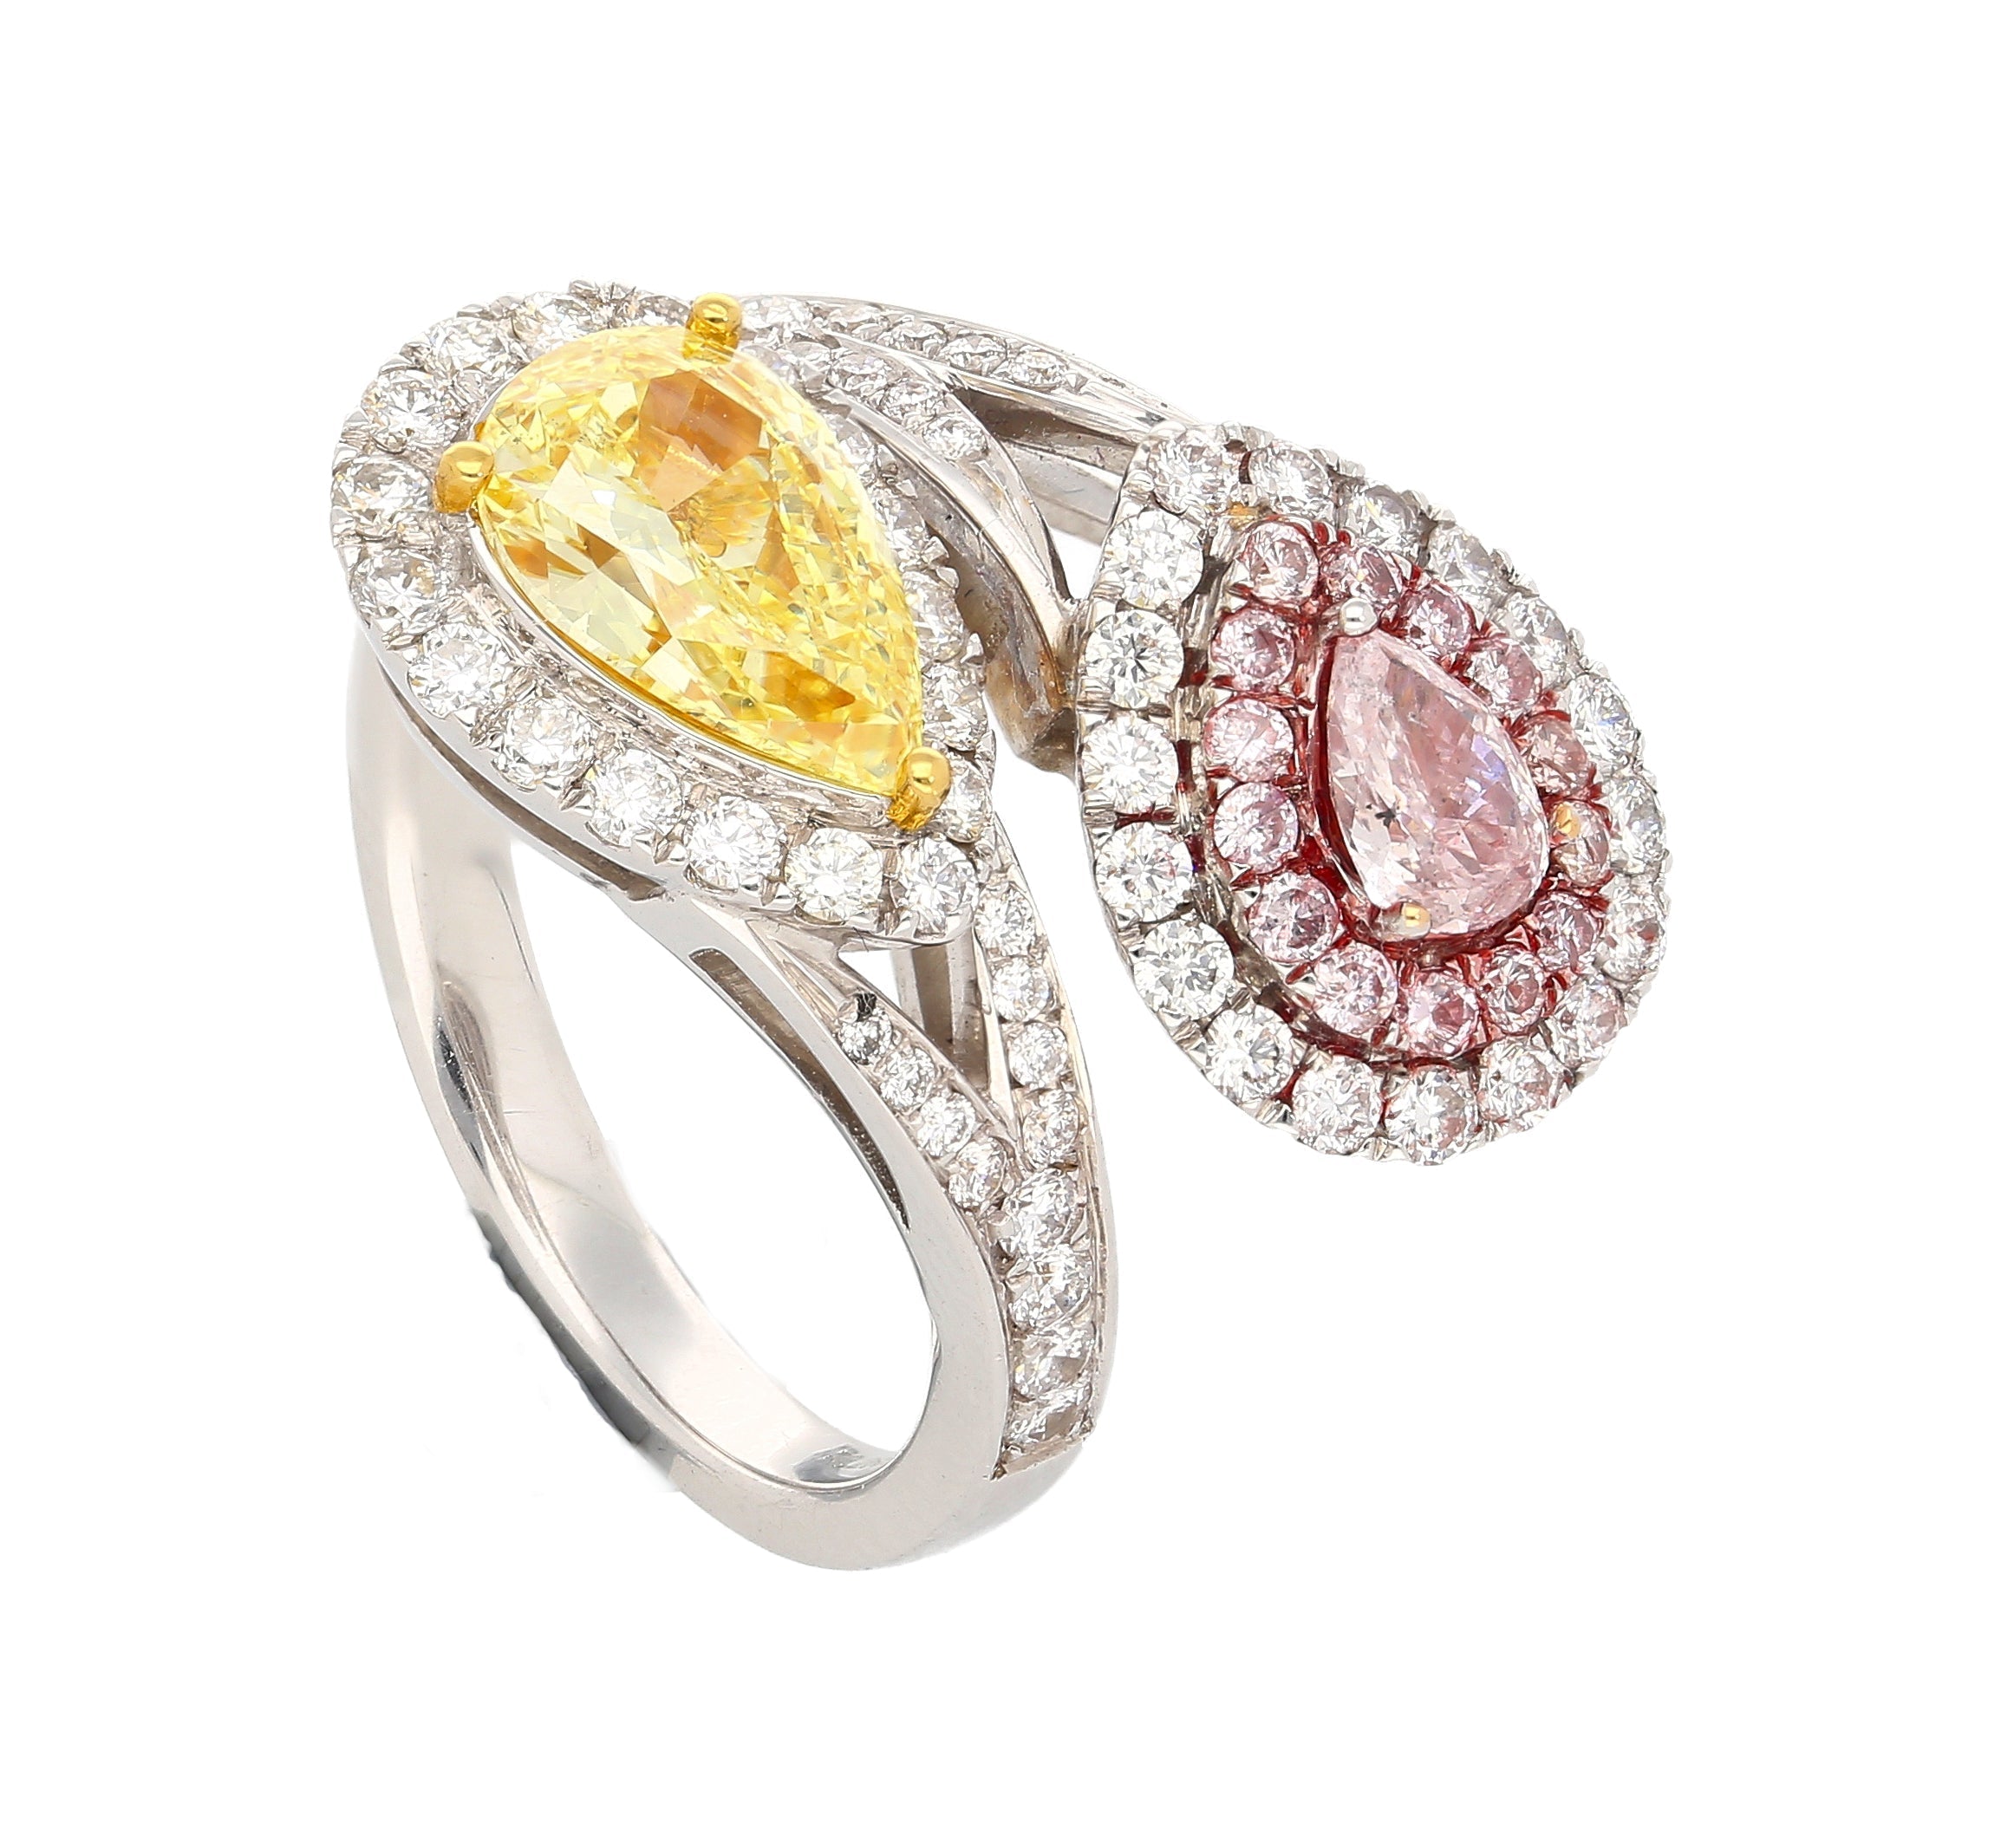 GIA-Certified-Fancy-Intense-Yellow-Fancy-Light-Pink-Diamond-Toi-Et-Moi-Ring-in-18K-White-Gold-Rings-2_1c069f2e-0f13-4015-be2d-02db478edbb1.jpg